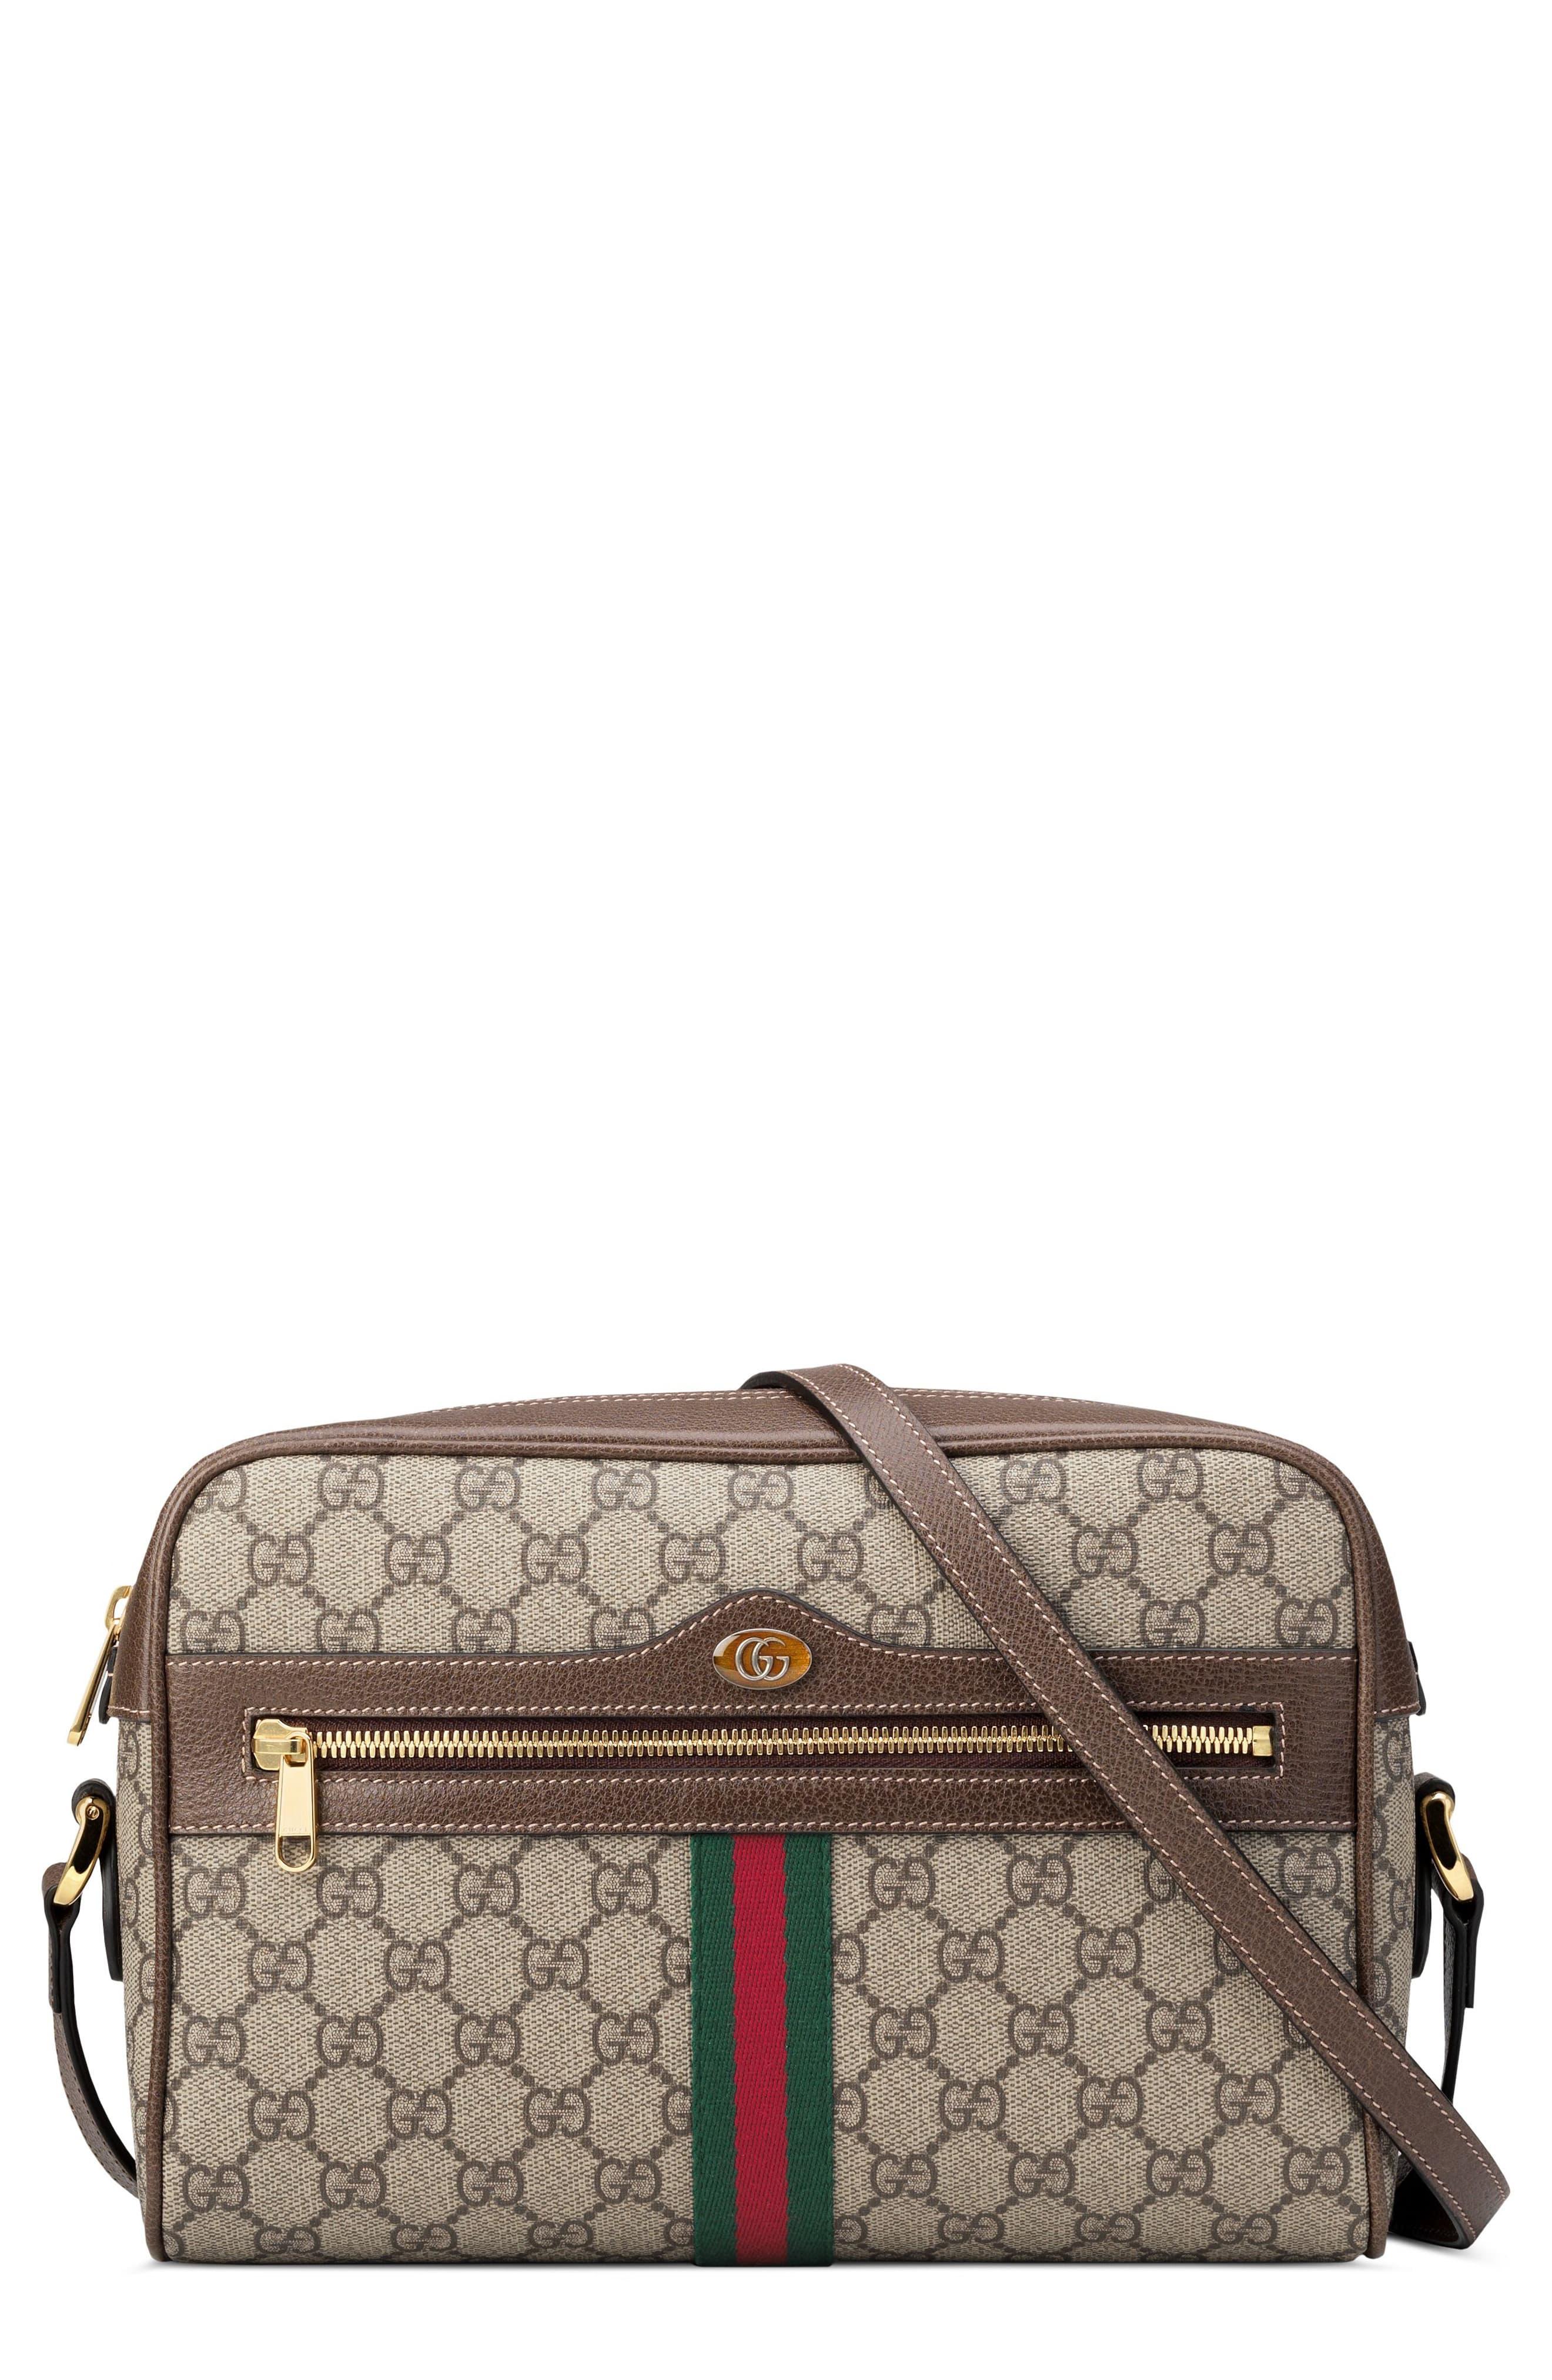 Gucci Supreme Canvas Tote Bags | IQS Executive